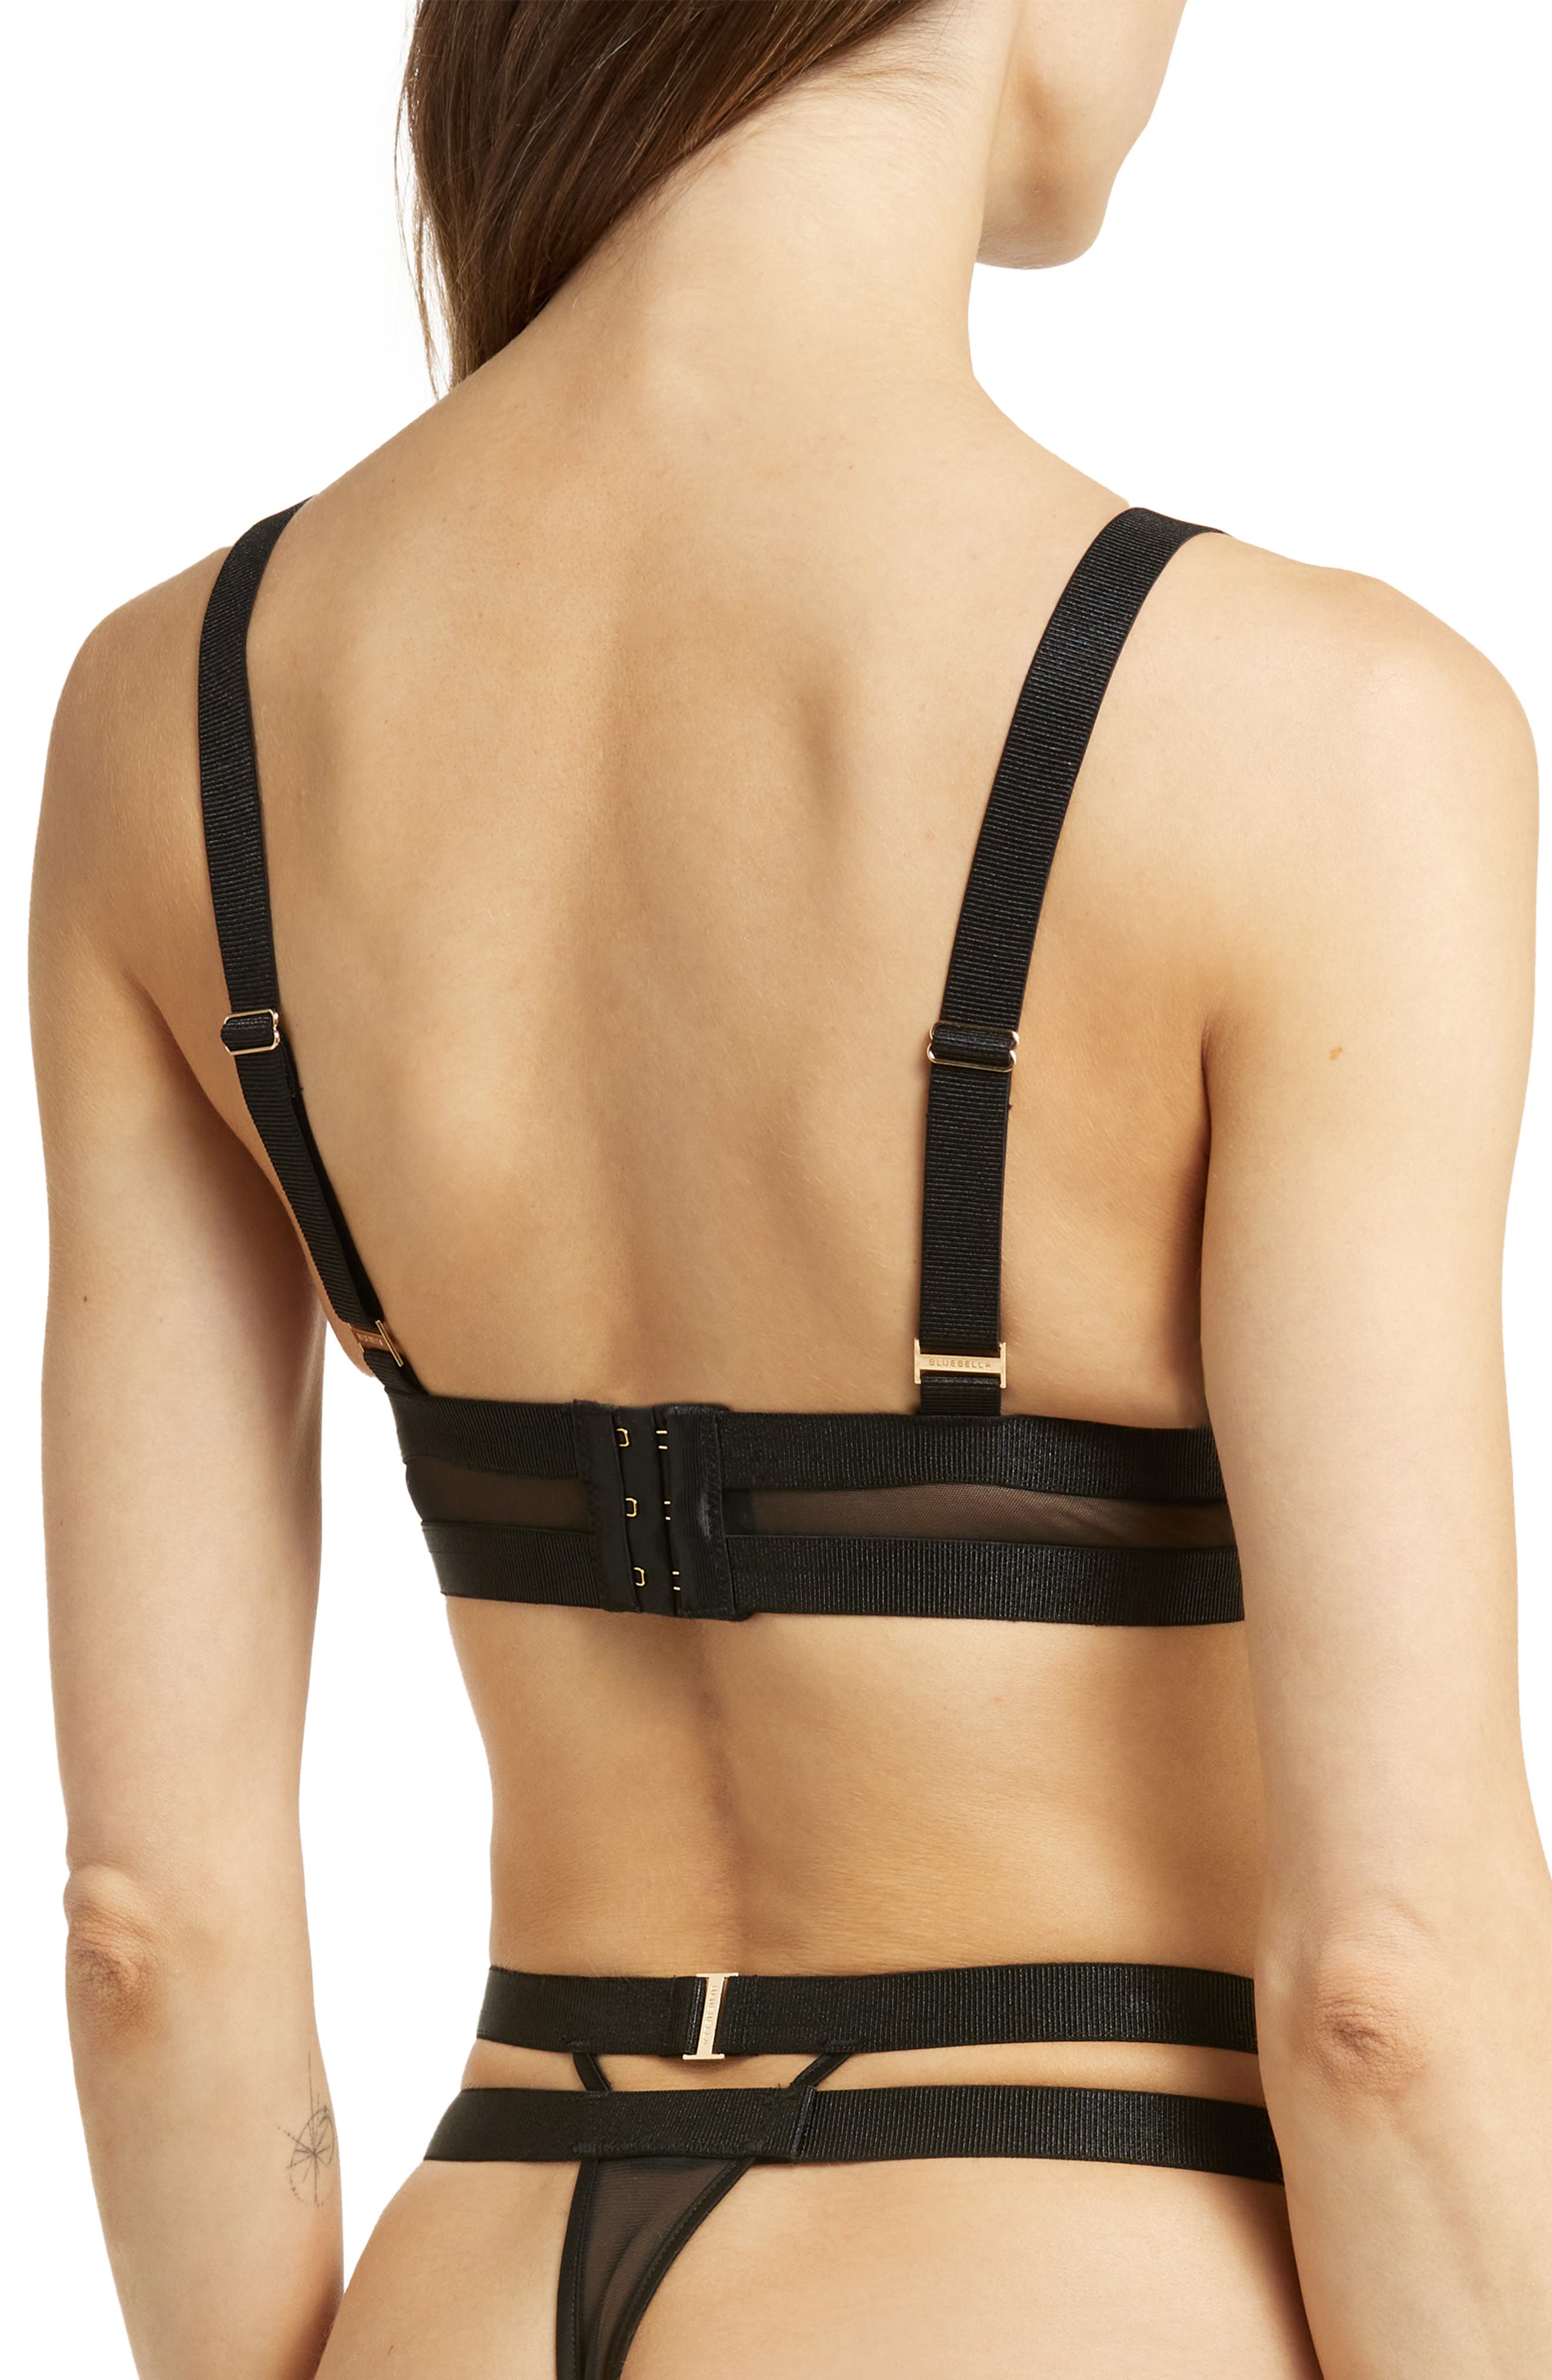 Women's Bluebella Emerson Suspender  Suspender belt, Bluebella, Bra and  brief sets